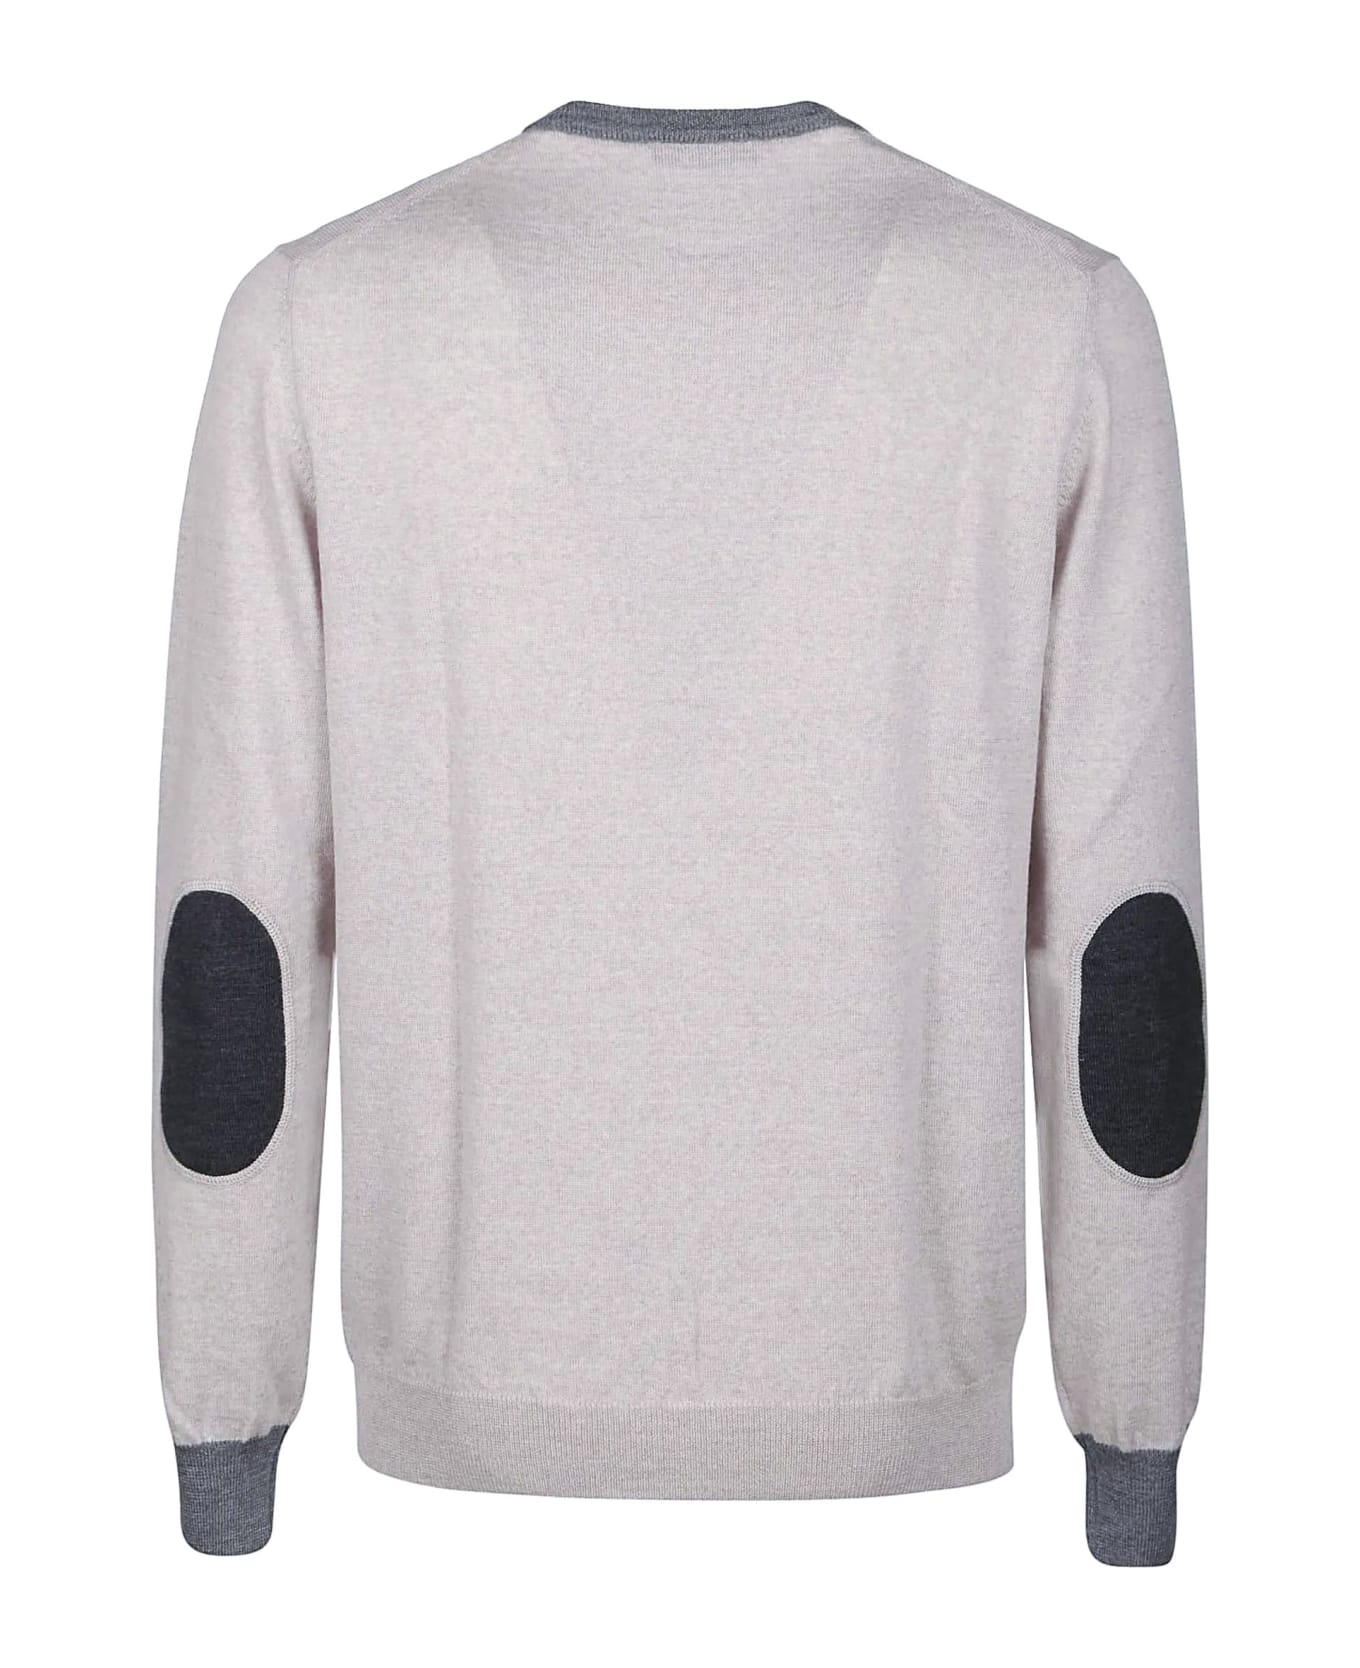 Fay Round Neck Sweater - Stucco Chiaro/cenere Scuro/catrame